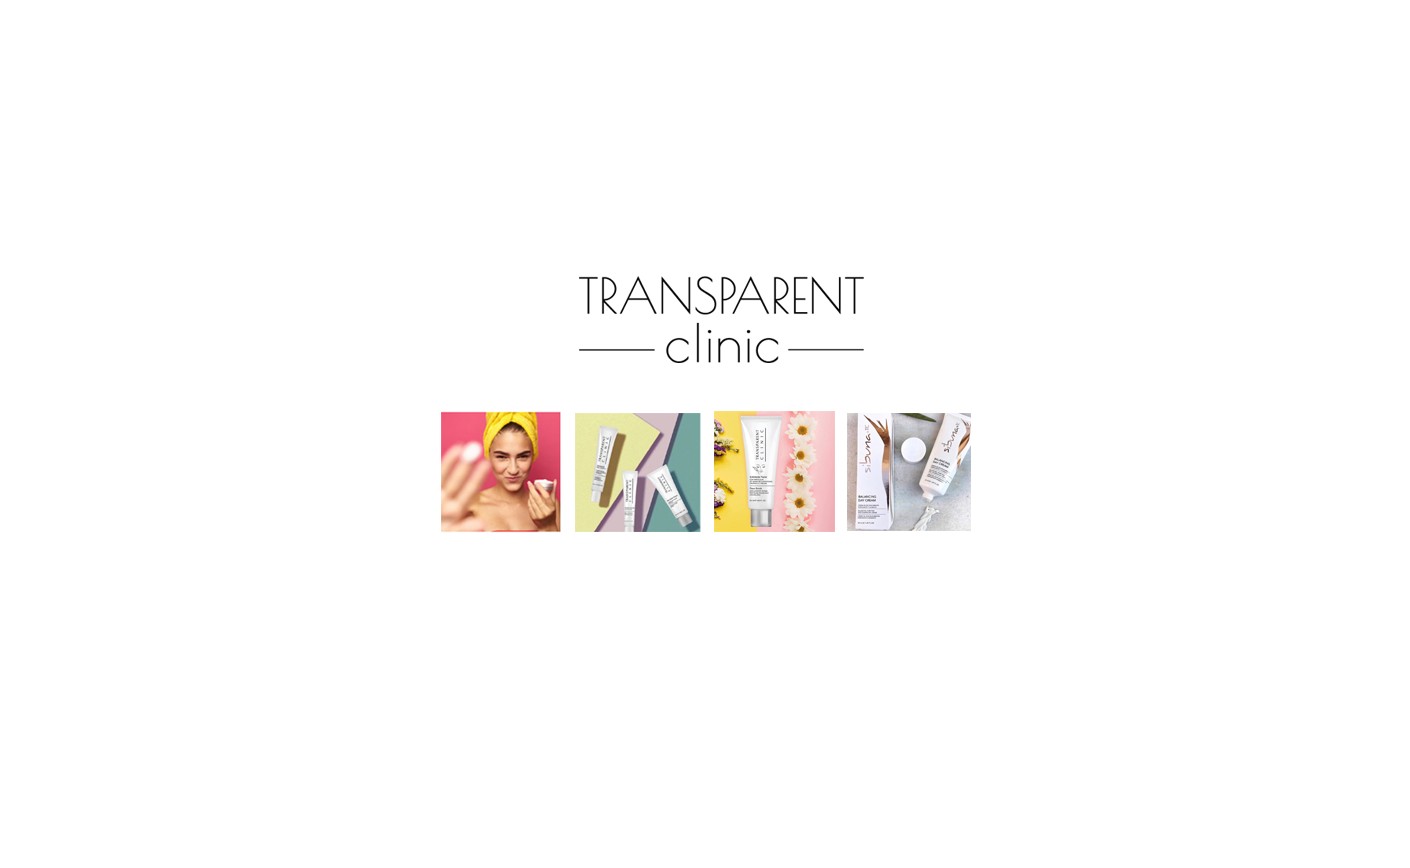 Transparent Clinic: Mudança de imagem e novo conceito